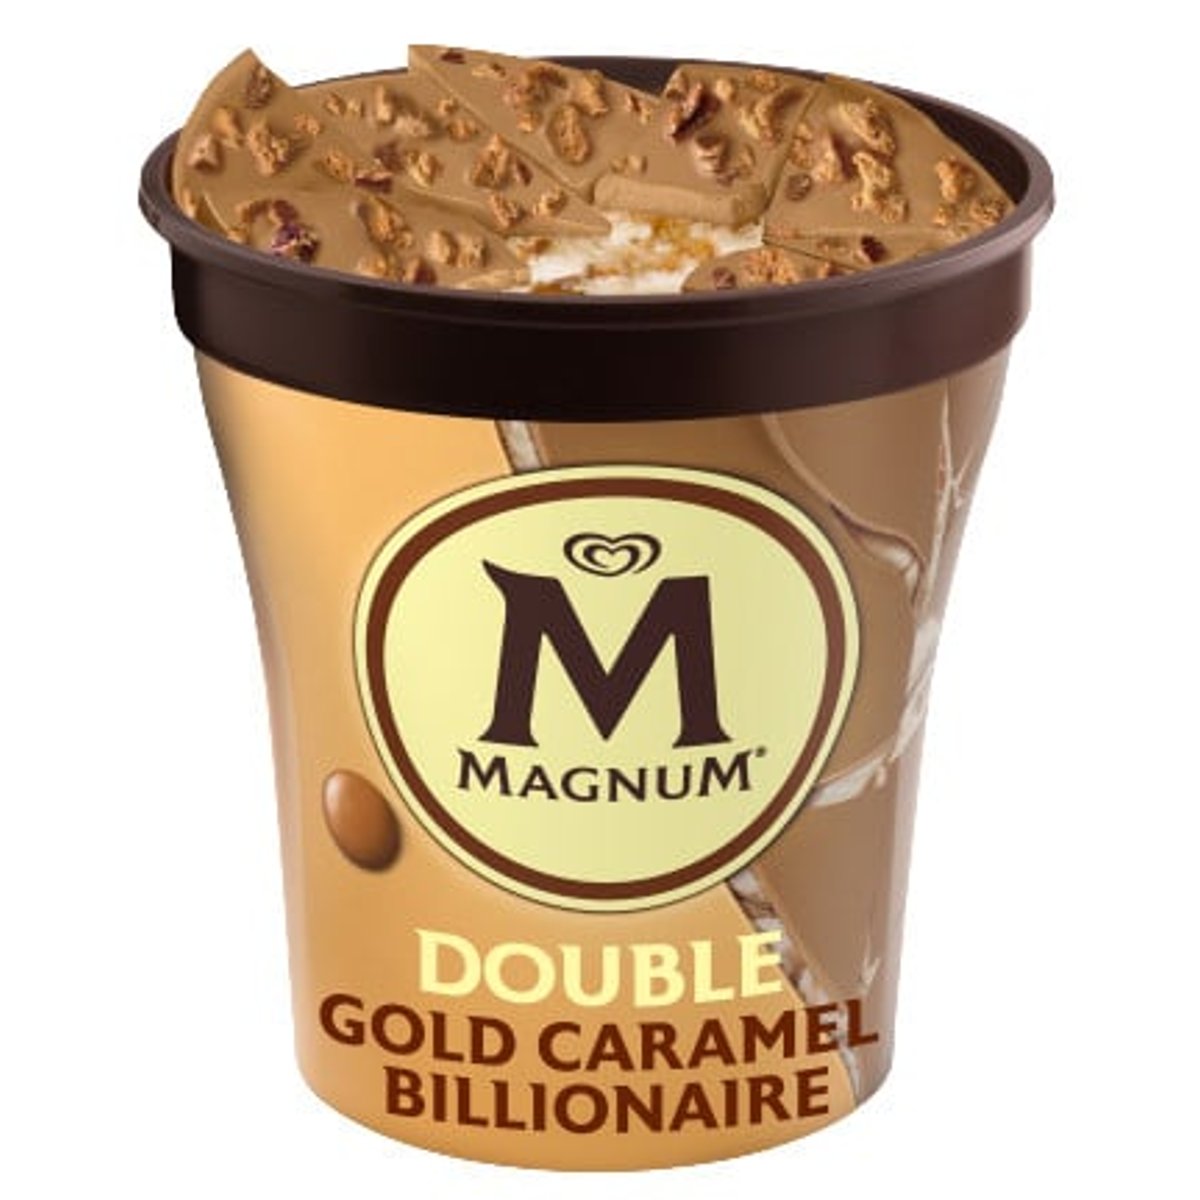 Magnum Caramel Gold Billionaire zmrzlina v kelímku